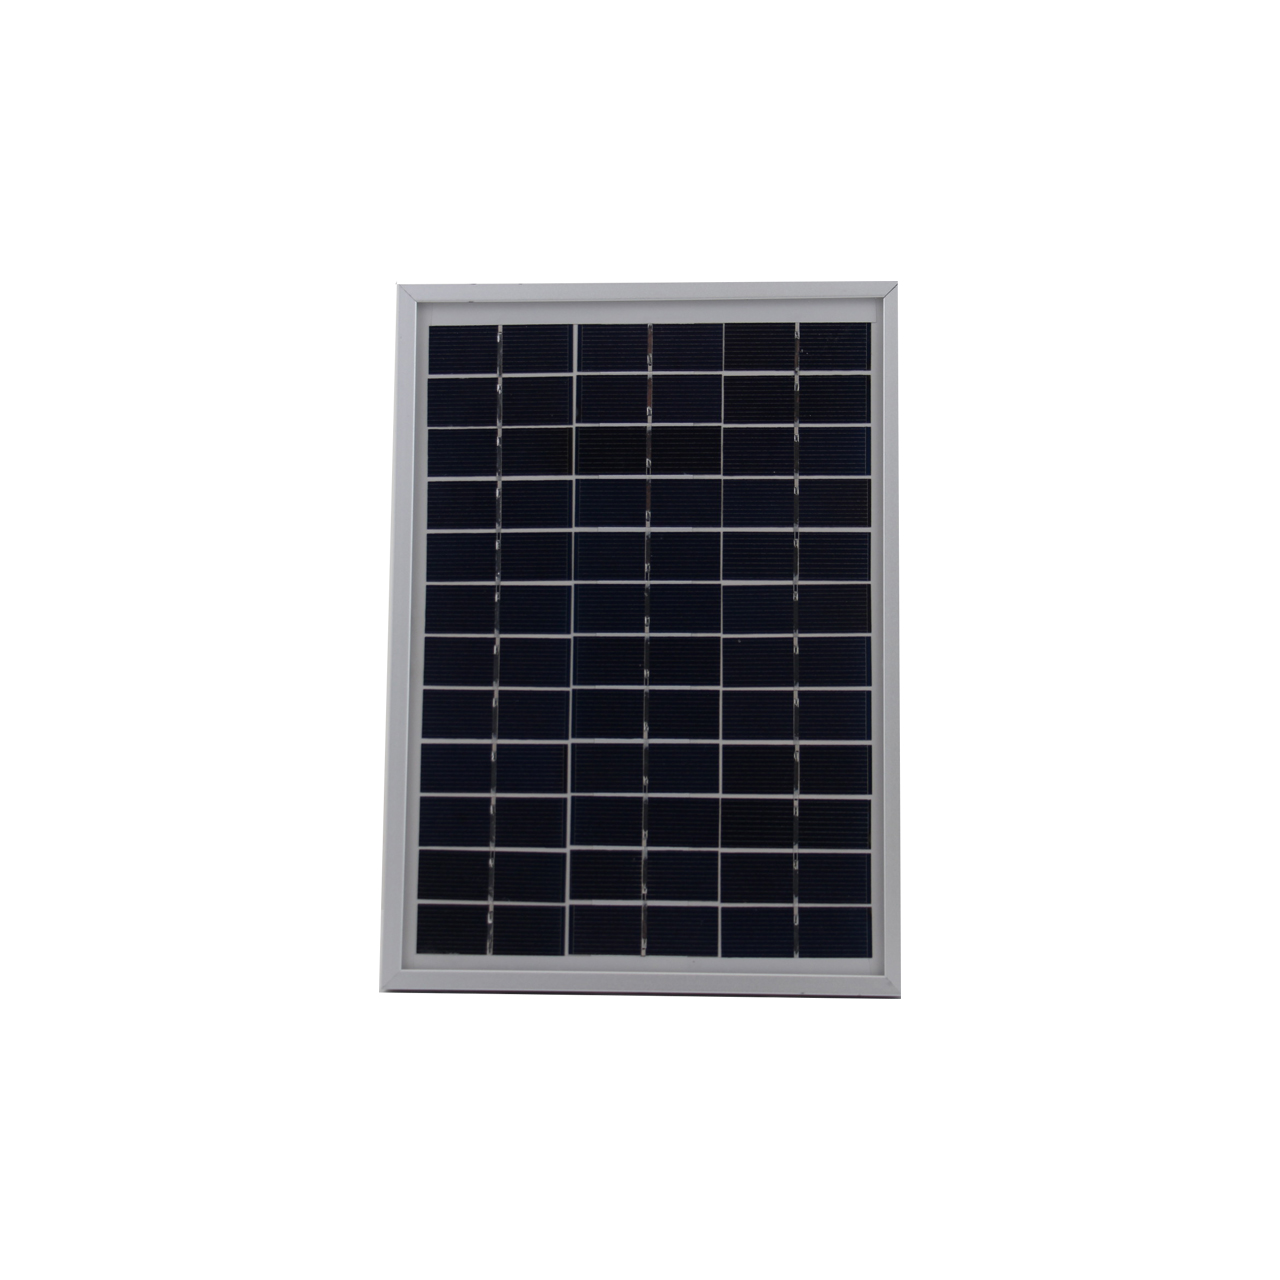 پنل خورشیدی ماکسل مدل CY-TP5 با توان 5 وات